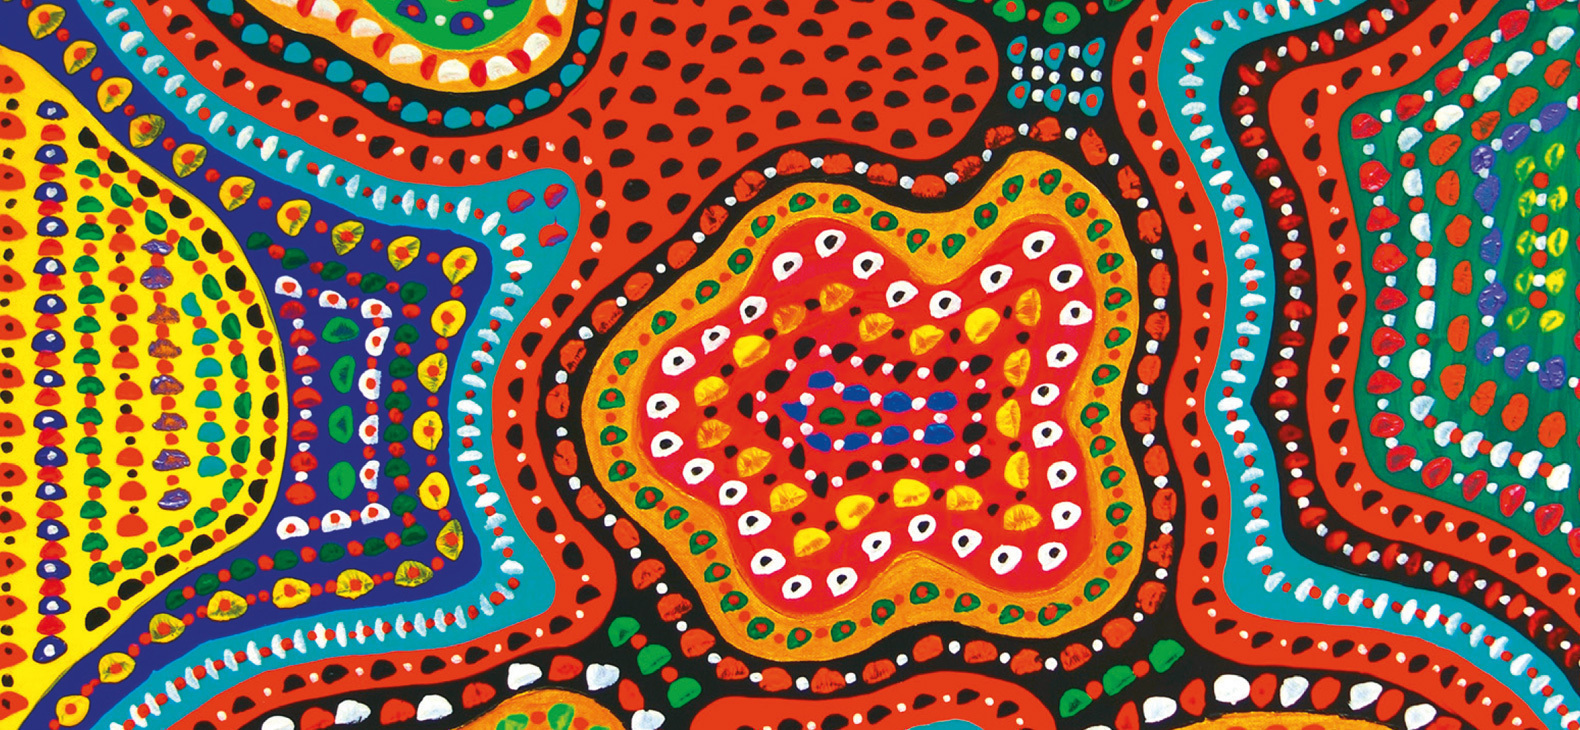 Ein Gemälde des Künslters Thomas Hobelsberger: "Farben auf Leinwand": Eine Komposition aus organischen, bunten Farbflächen in Rot, orange, Blau, Lila und Gelb. Die Farbflächen werden durch die gleichmäßige Strukturierung durch farbige kleine Kreise zu einem buntgen Ornament.